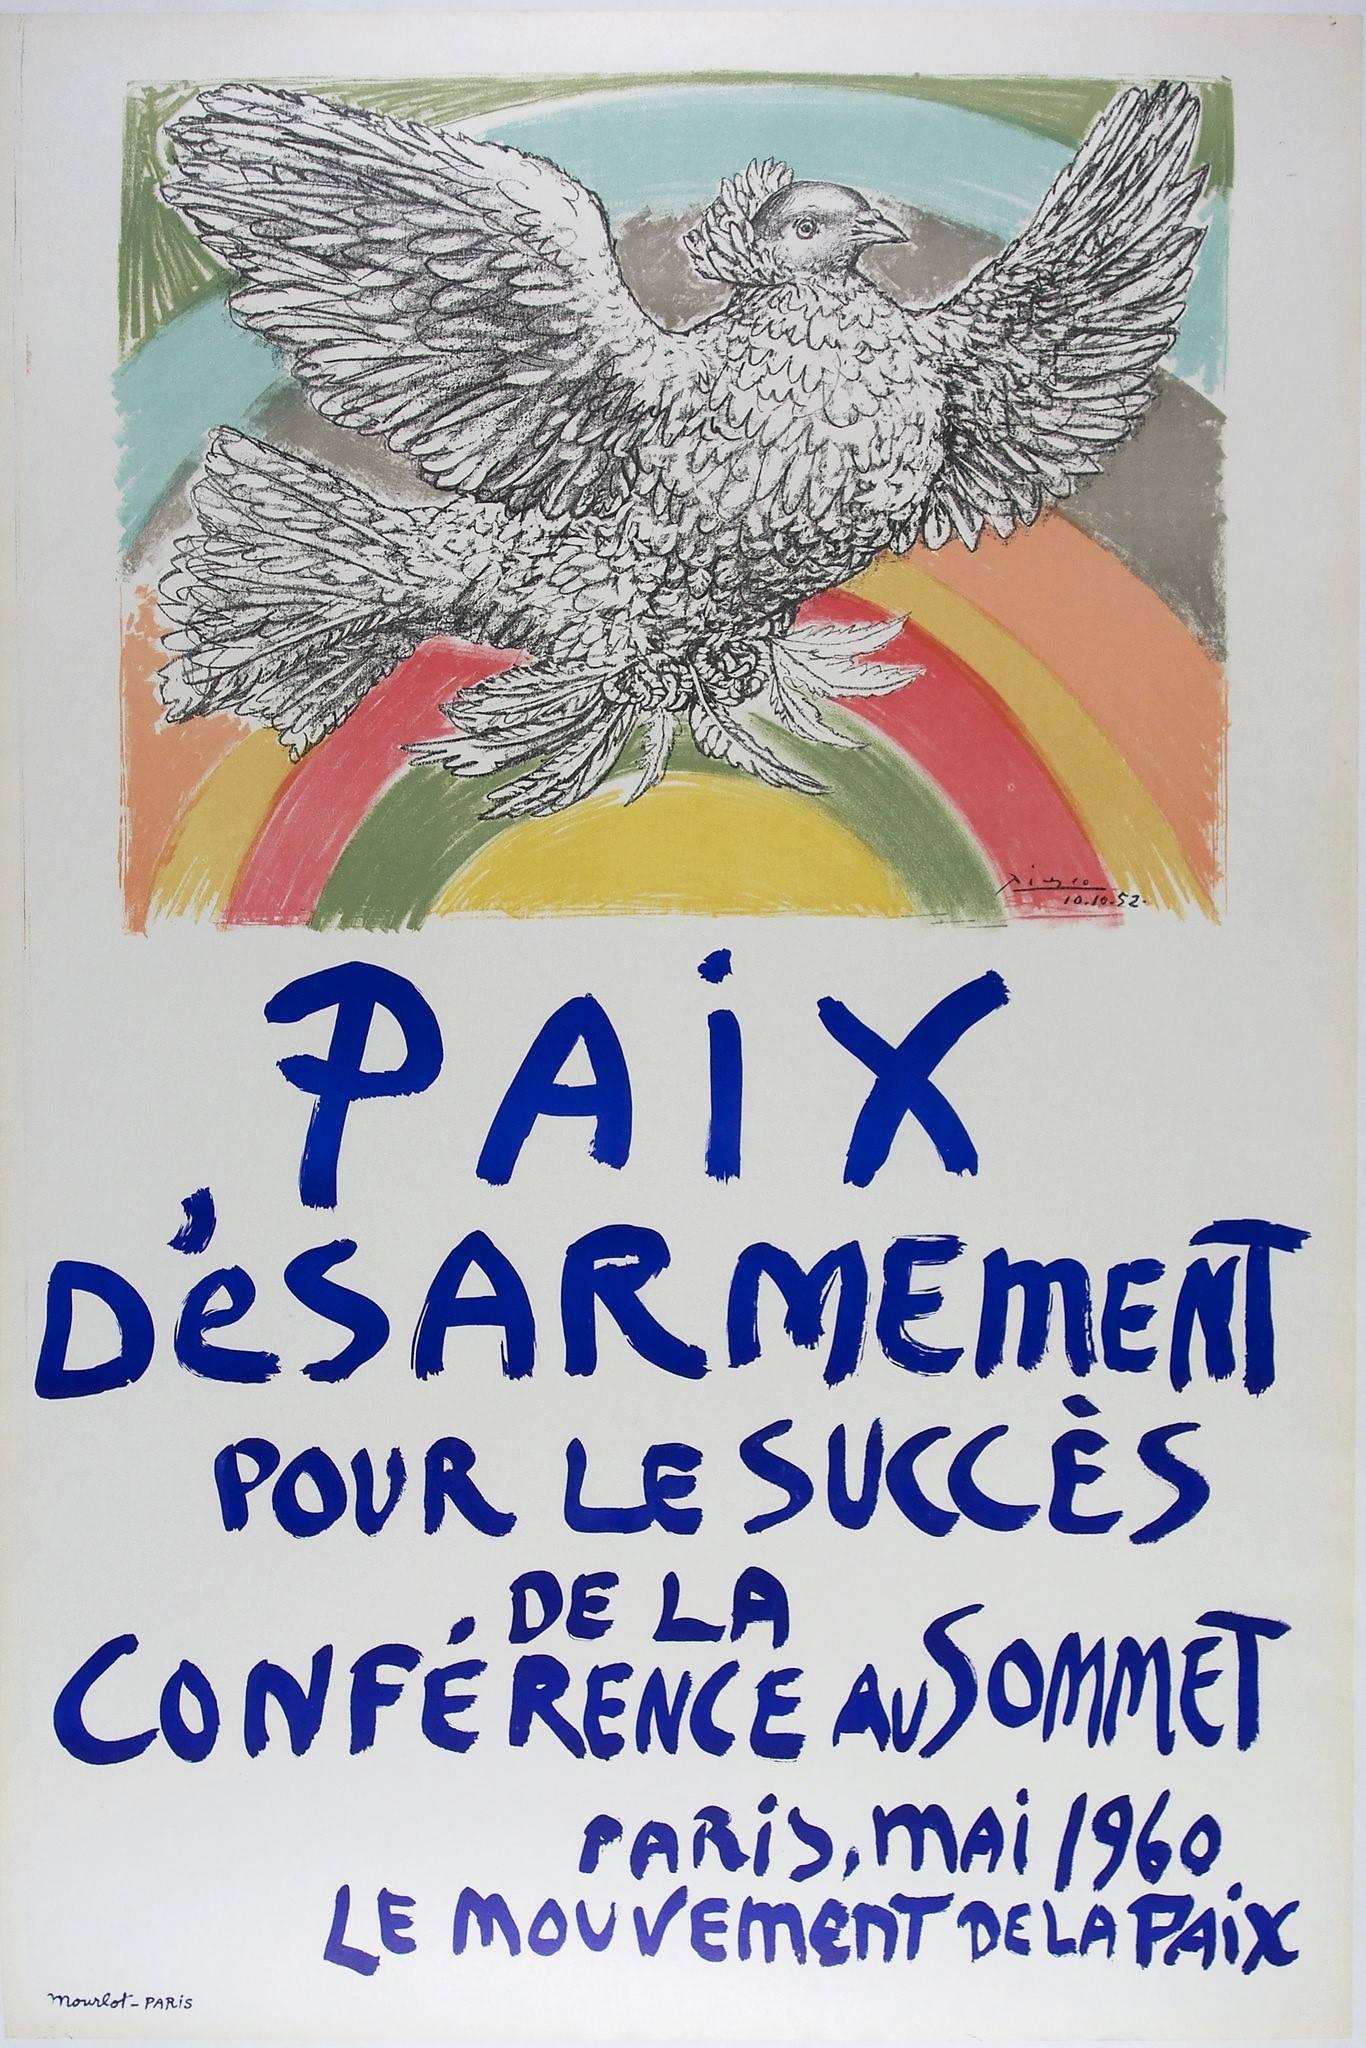 Paix desarmement - Print by (after) Pablo Picasso